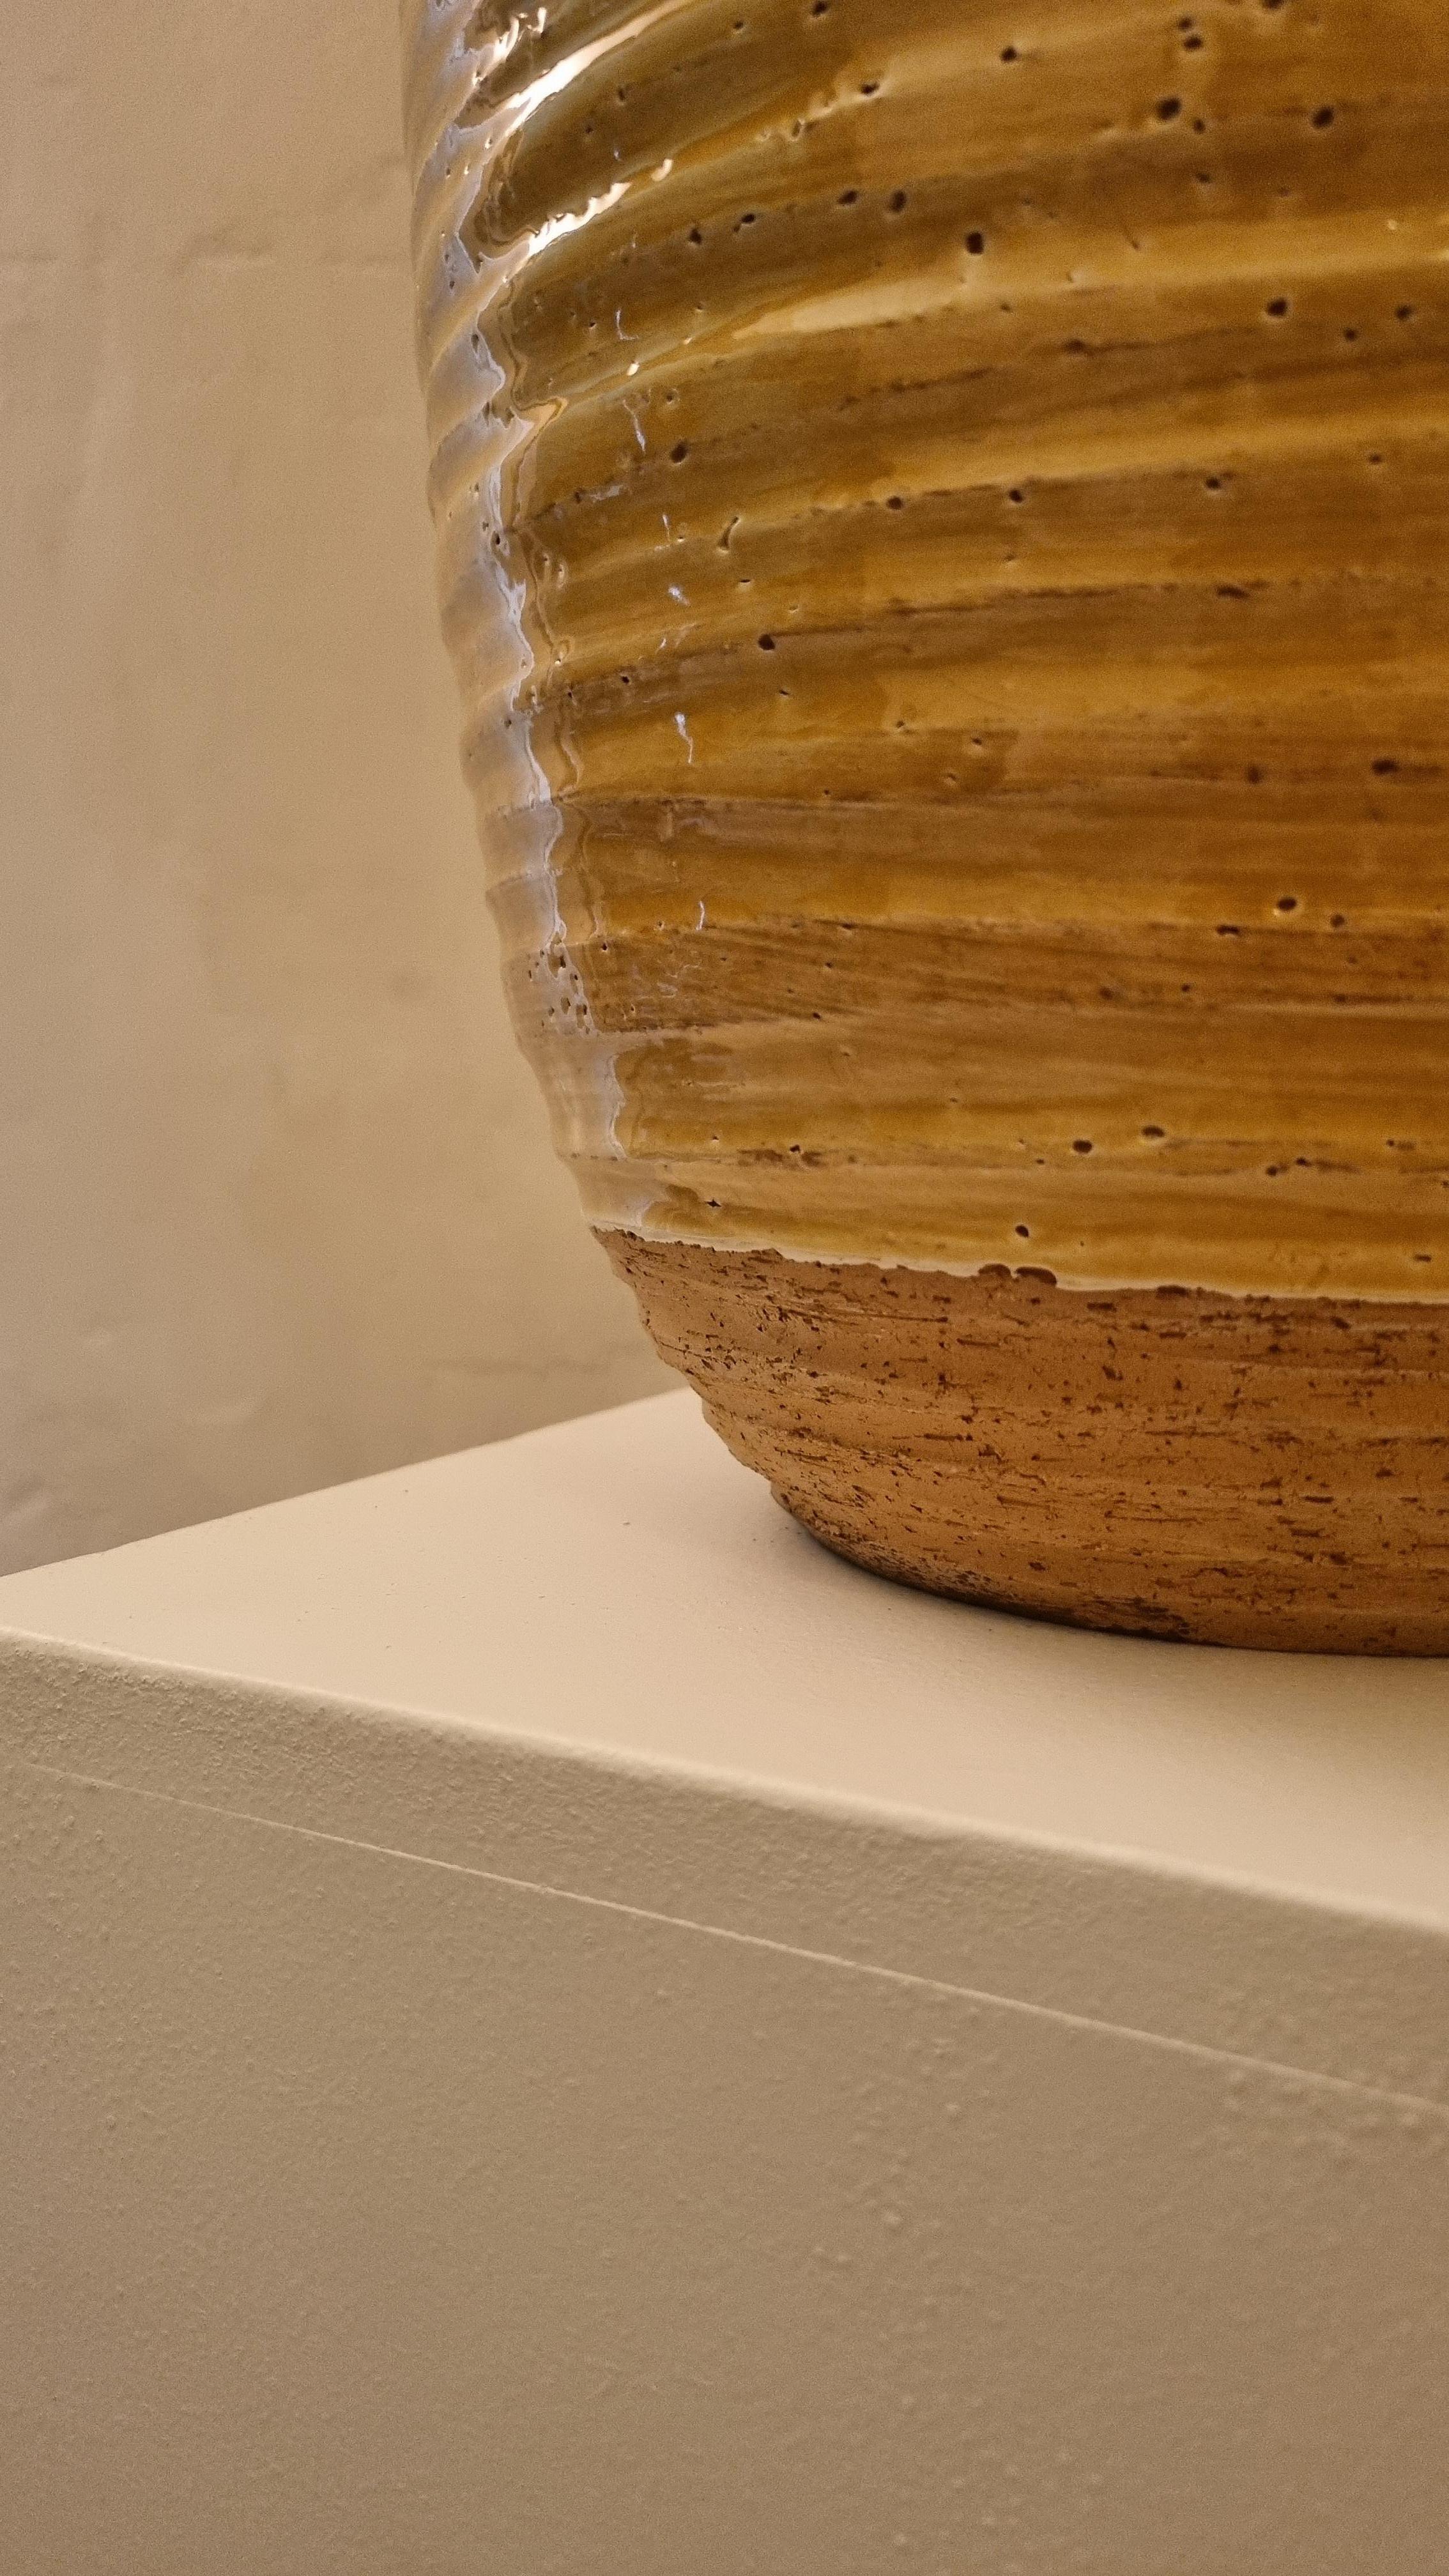 Seltener keramischer Übertopf von Rosenthal Netter für Ceramiche Bitossi Montelupo, 70er Jahre.
Keramik glasiert,  handbemalt in Gelbtönen .  .
Jedes von Bitossi geschaffene Werk folgt einem sehr komplexen Arbeitsprozess, sowohl im formalen als auch